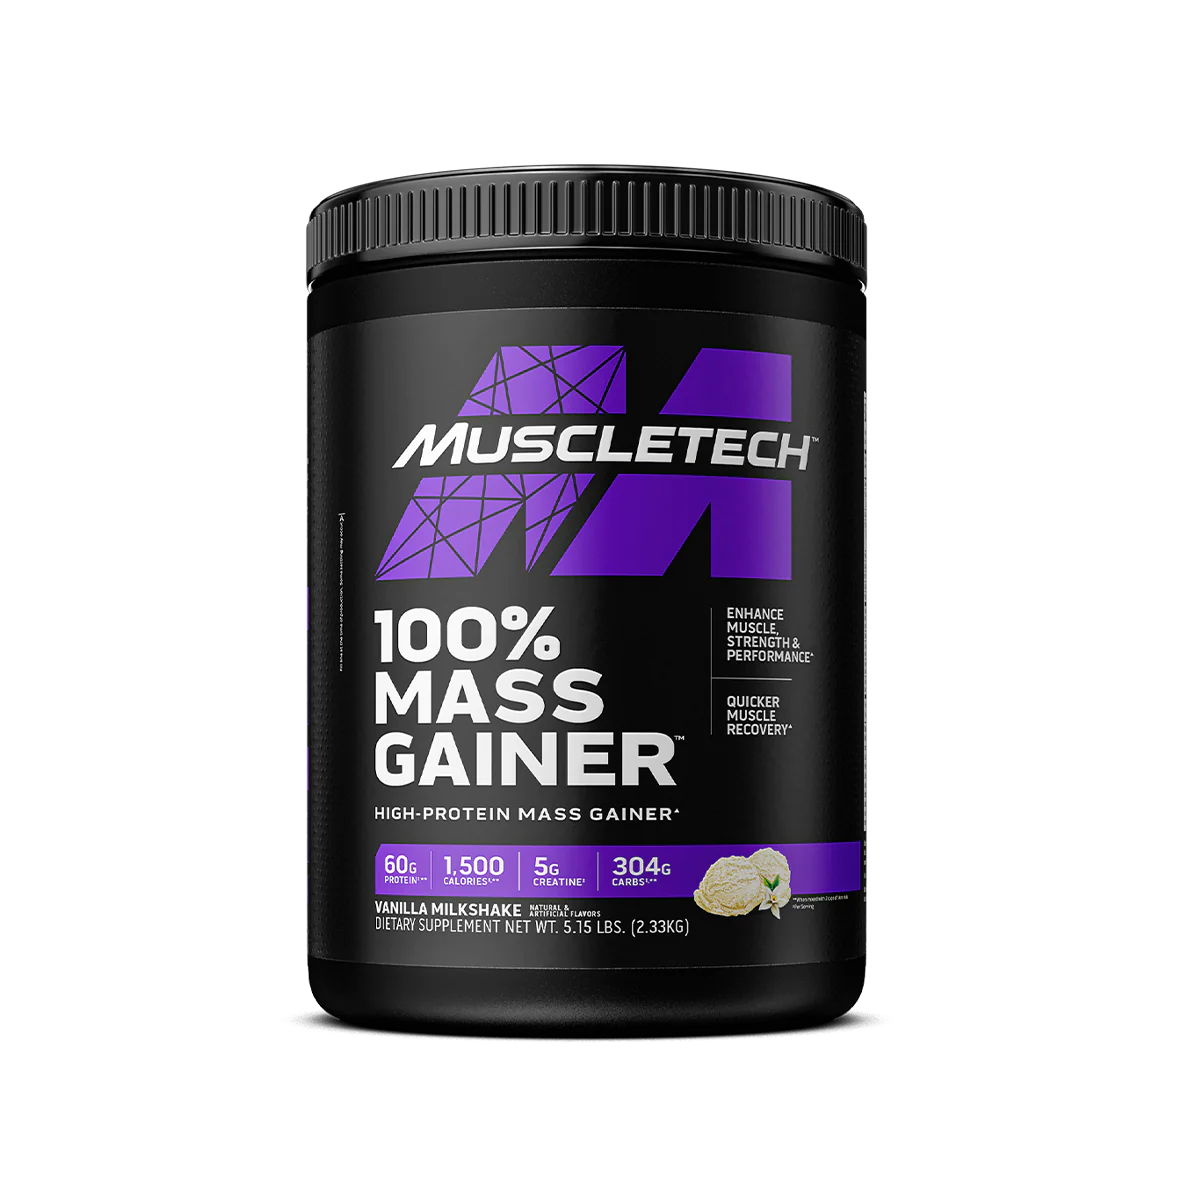 Muscletech 100 Mass Gainer 233kg515lbs Gs Nutrition 7897